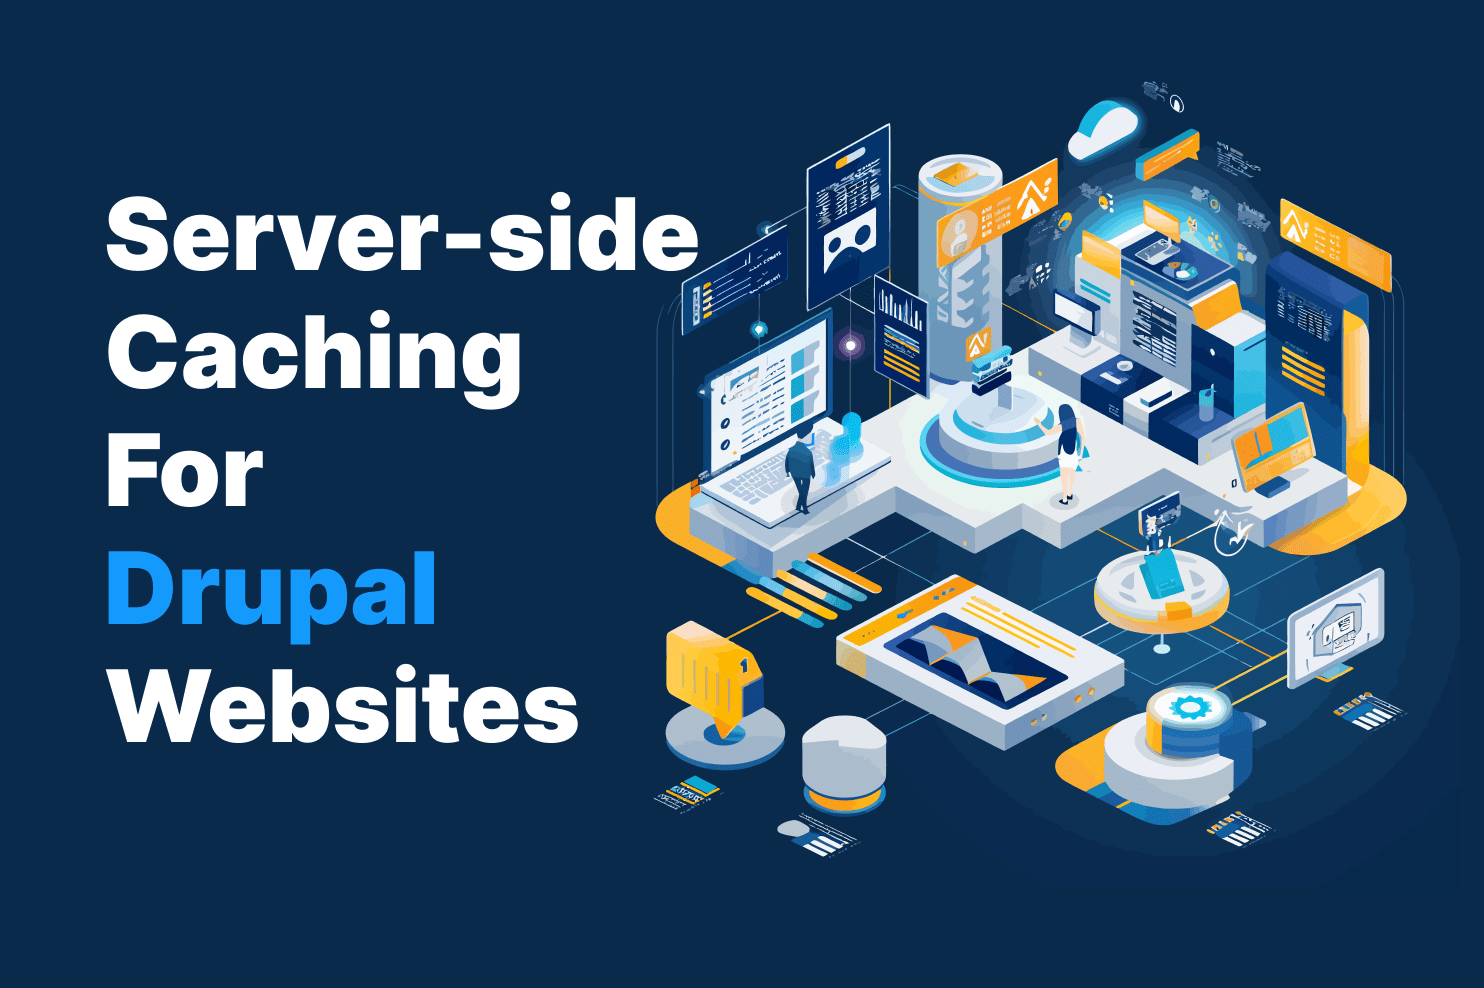 Server-side Caching for Drupal Websites